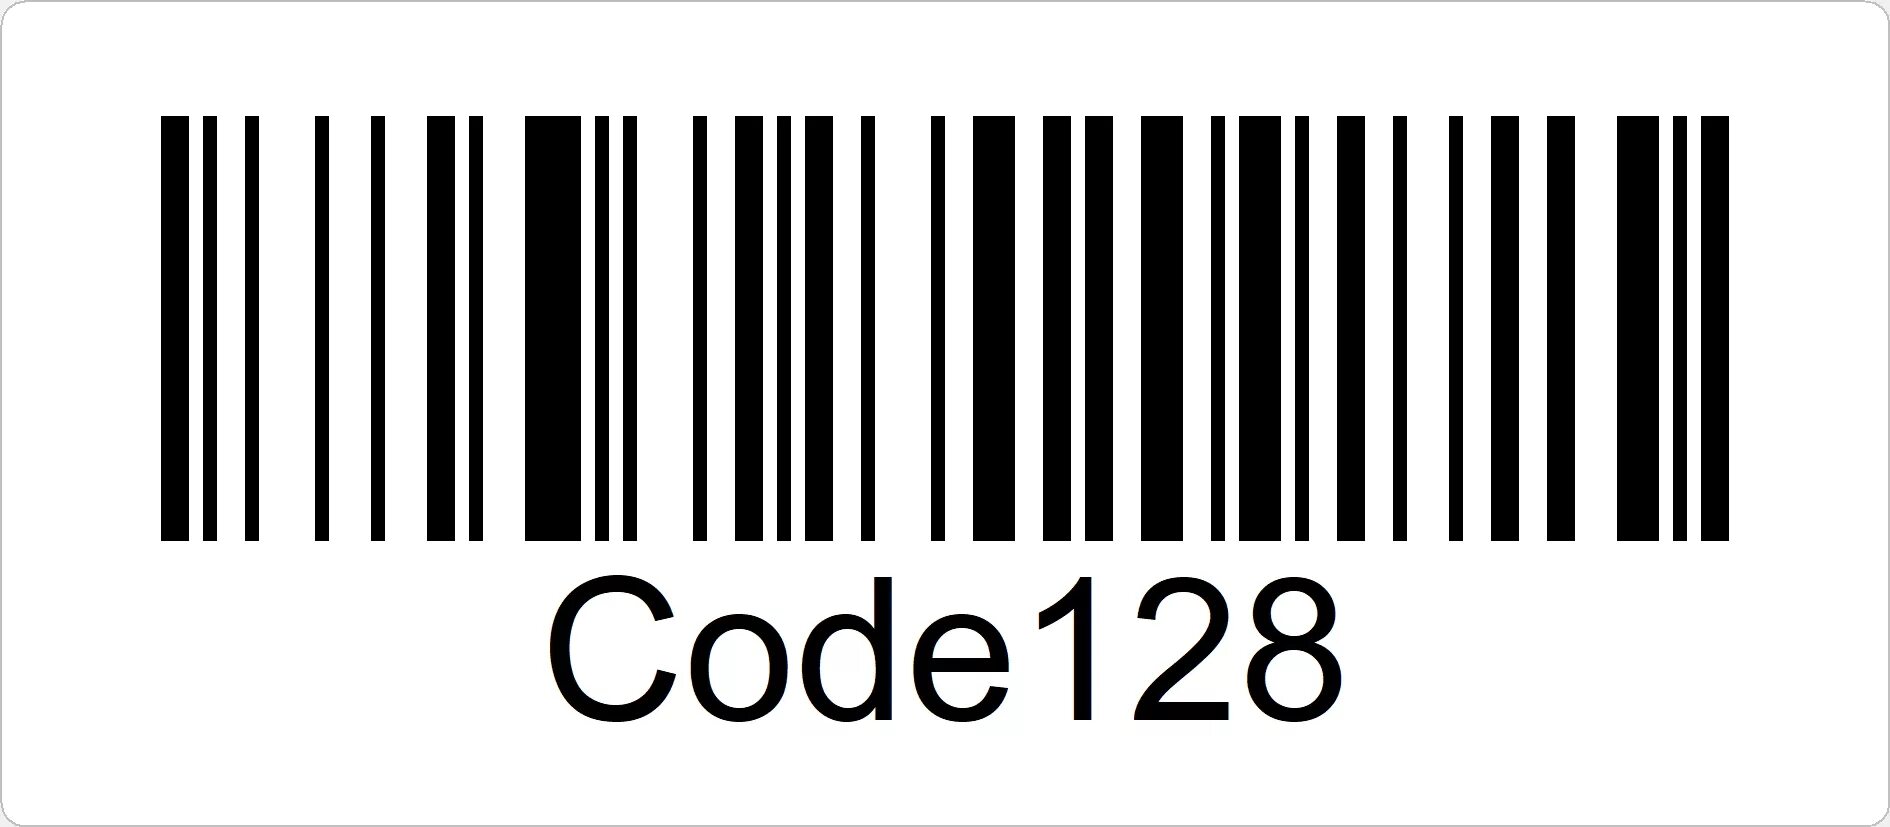 Уникальный штрих код. Штриховой код code128. Штрих код Barcode 128. EAN-13 code-128 штрих коды. Code 128 расшифровка.